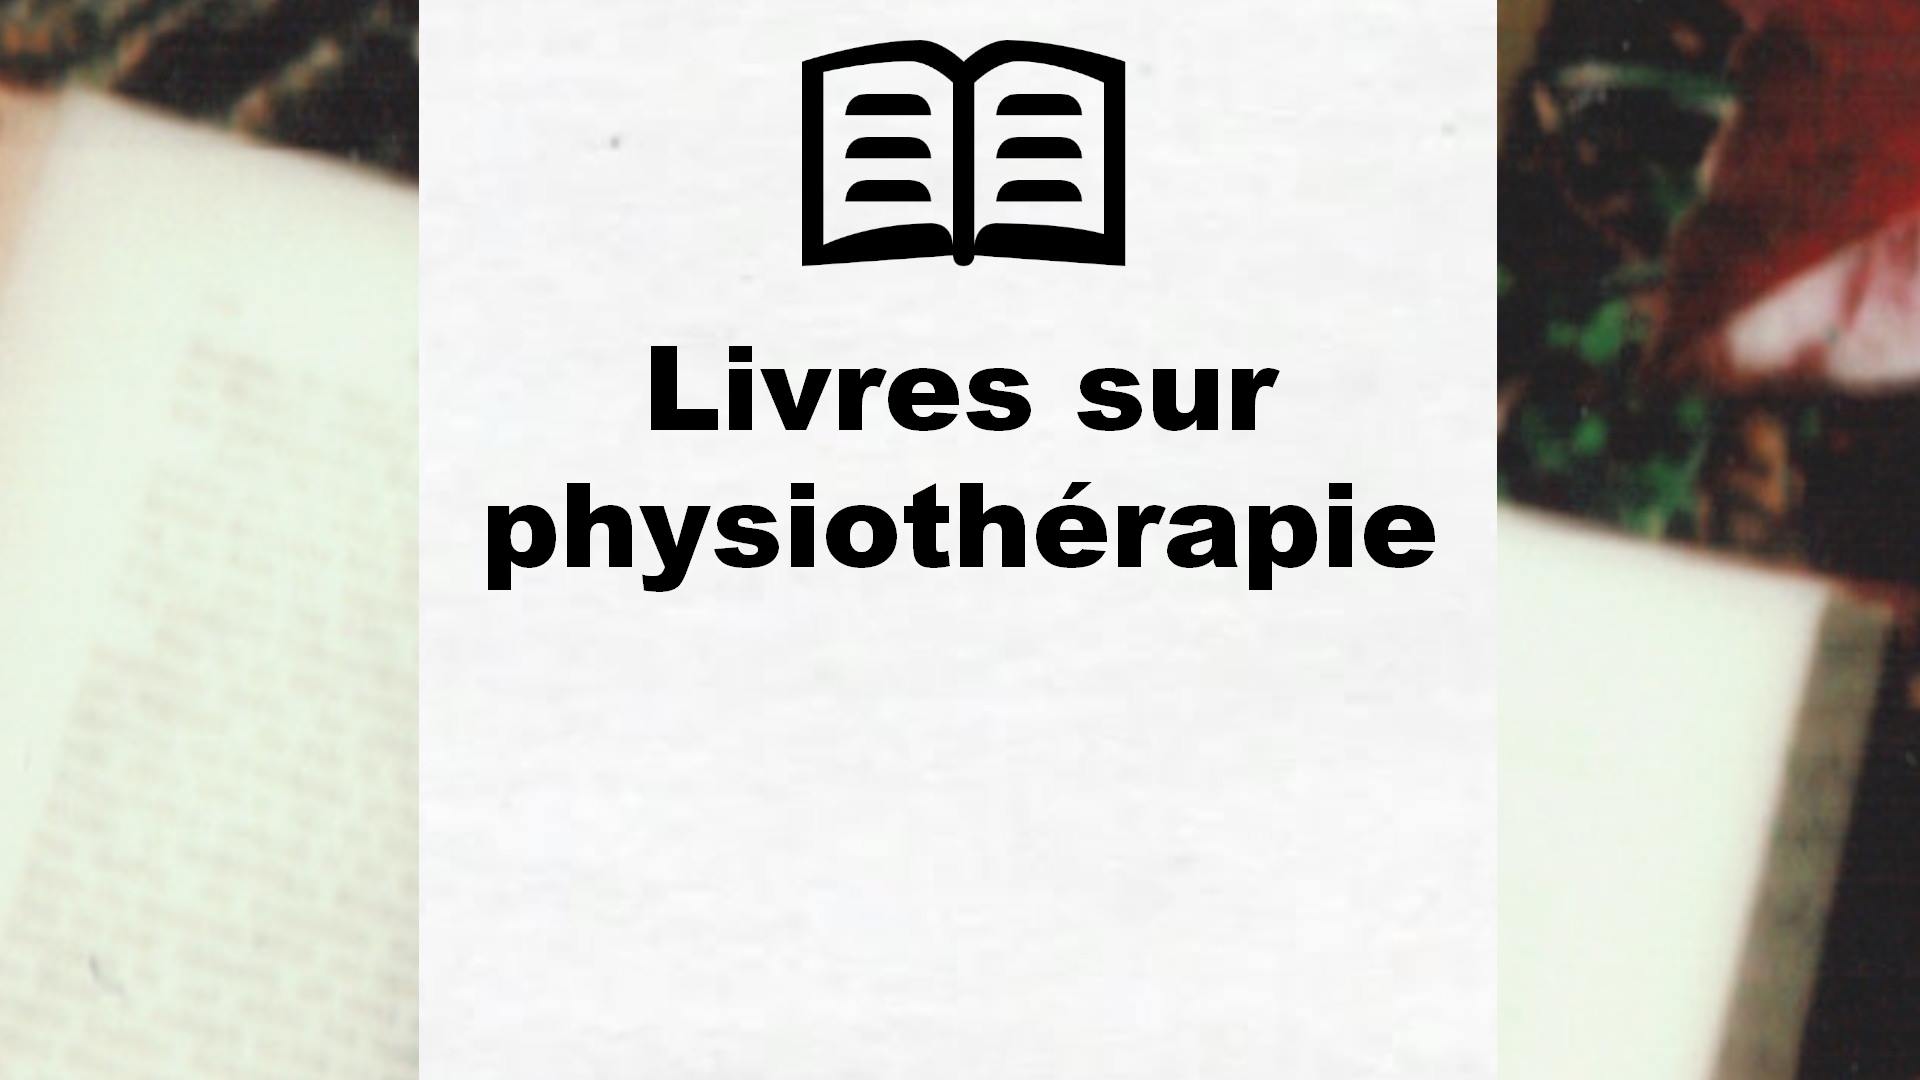 Livres sur physiothérapie